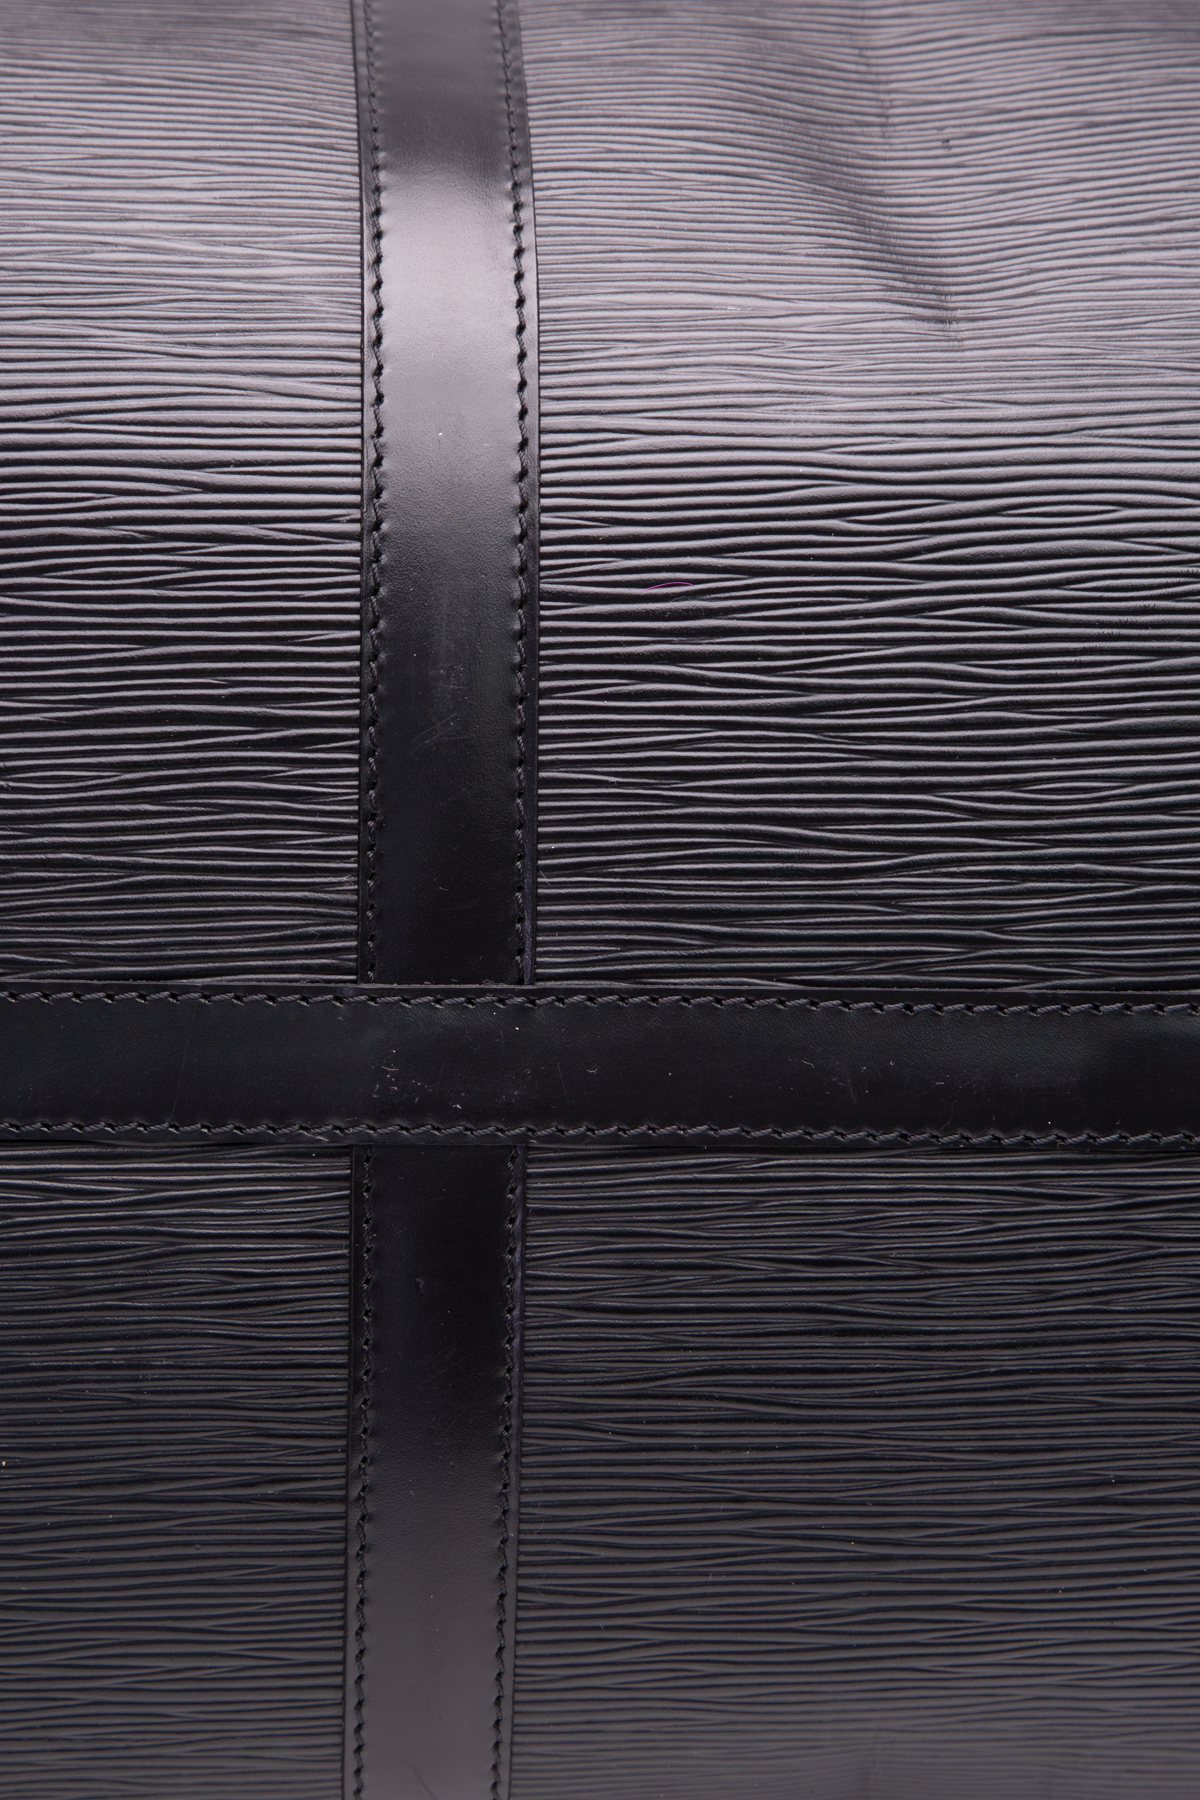 Louis Vuitton x Supreme Keepall Bandouliere Epi 55 Black